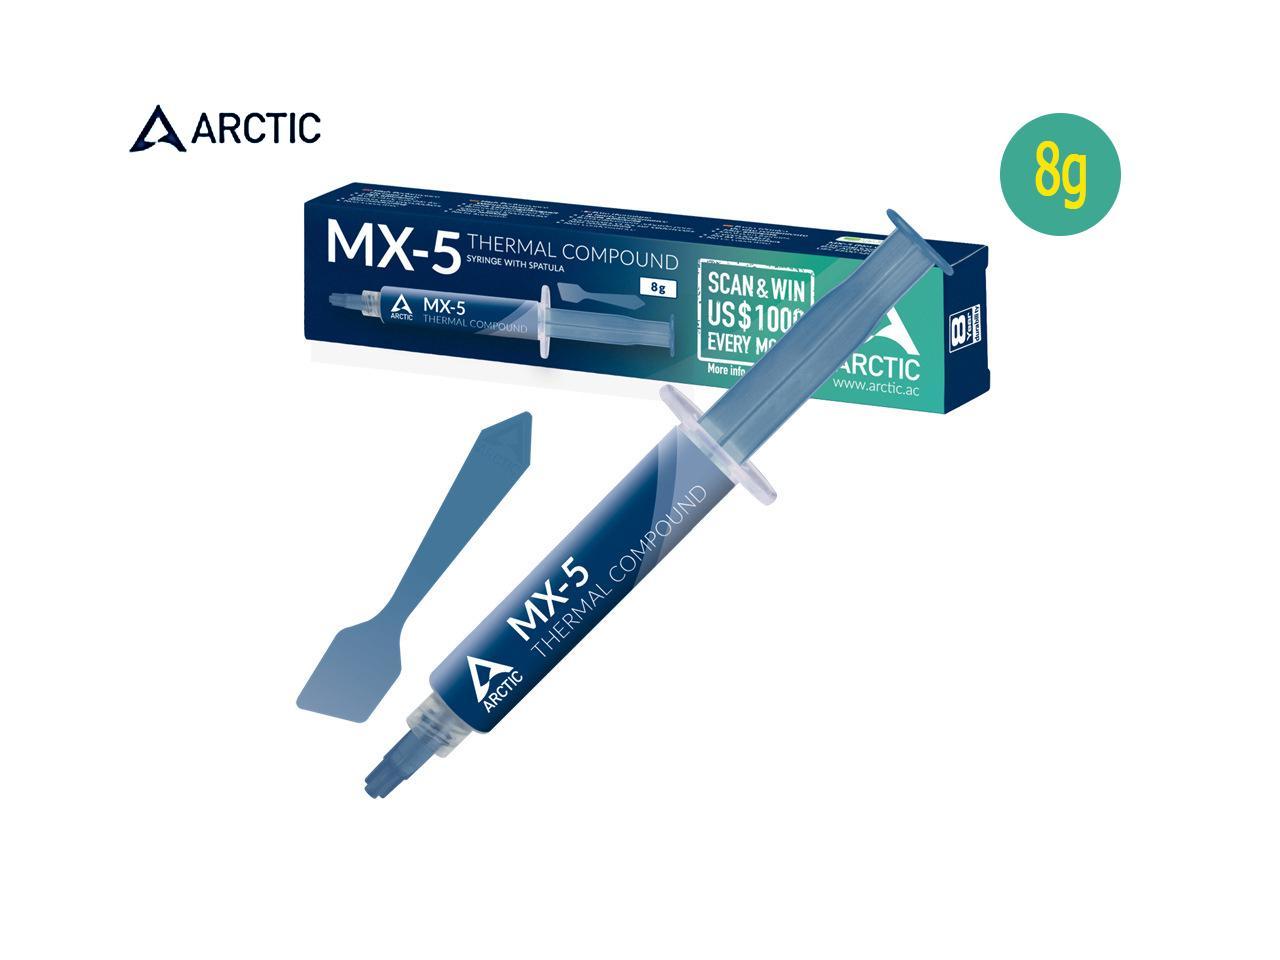 sans métal - Composé Thermique de qualité pour Tous Les refroidisseurs de processeurs ARCTIC MX-5 conductivité Thermique extrêmement élevée Faible résistance Thermique 8 g, spatule comprise 